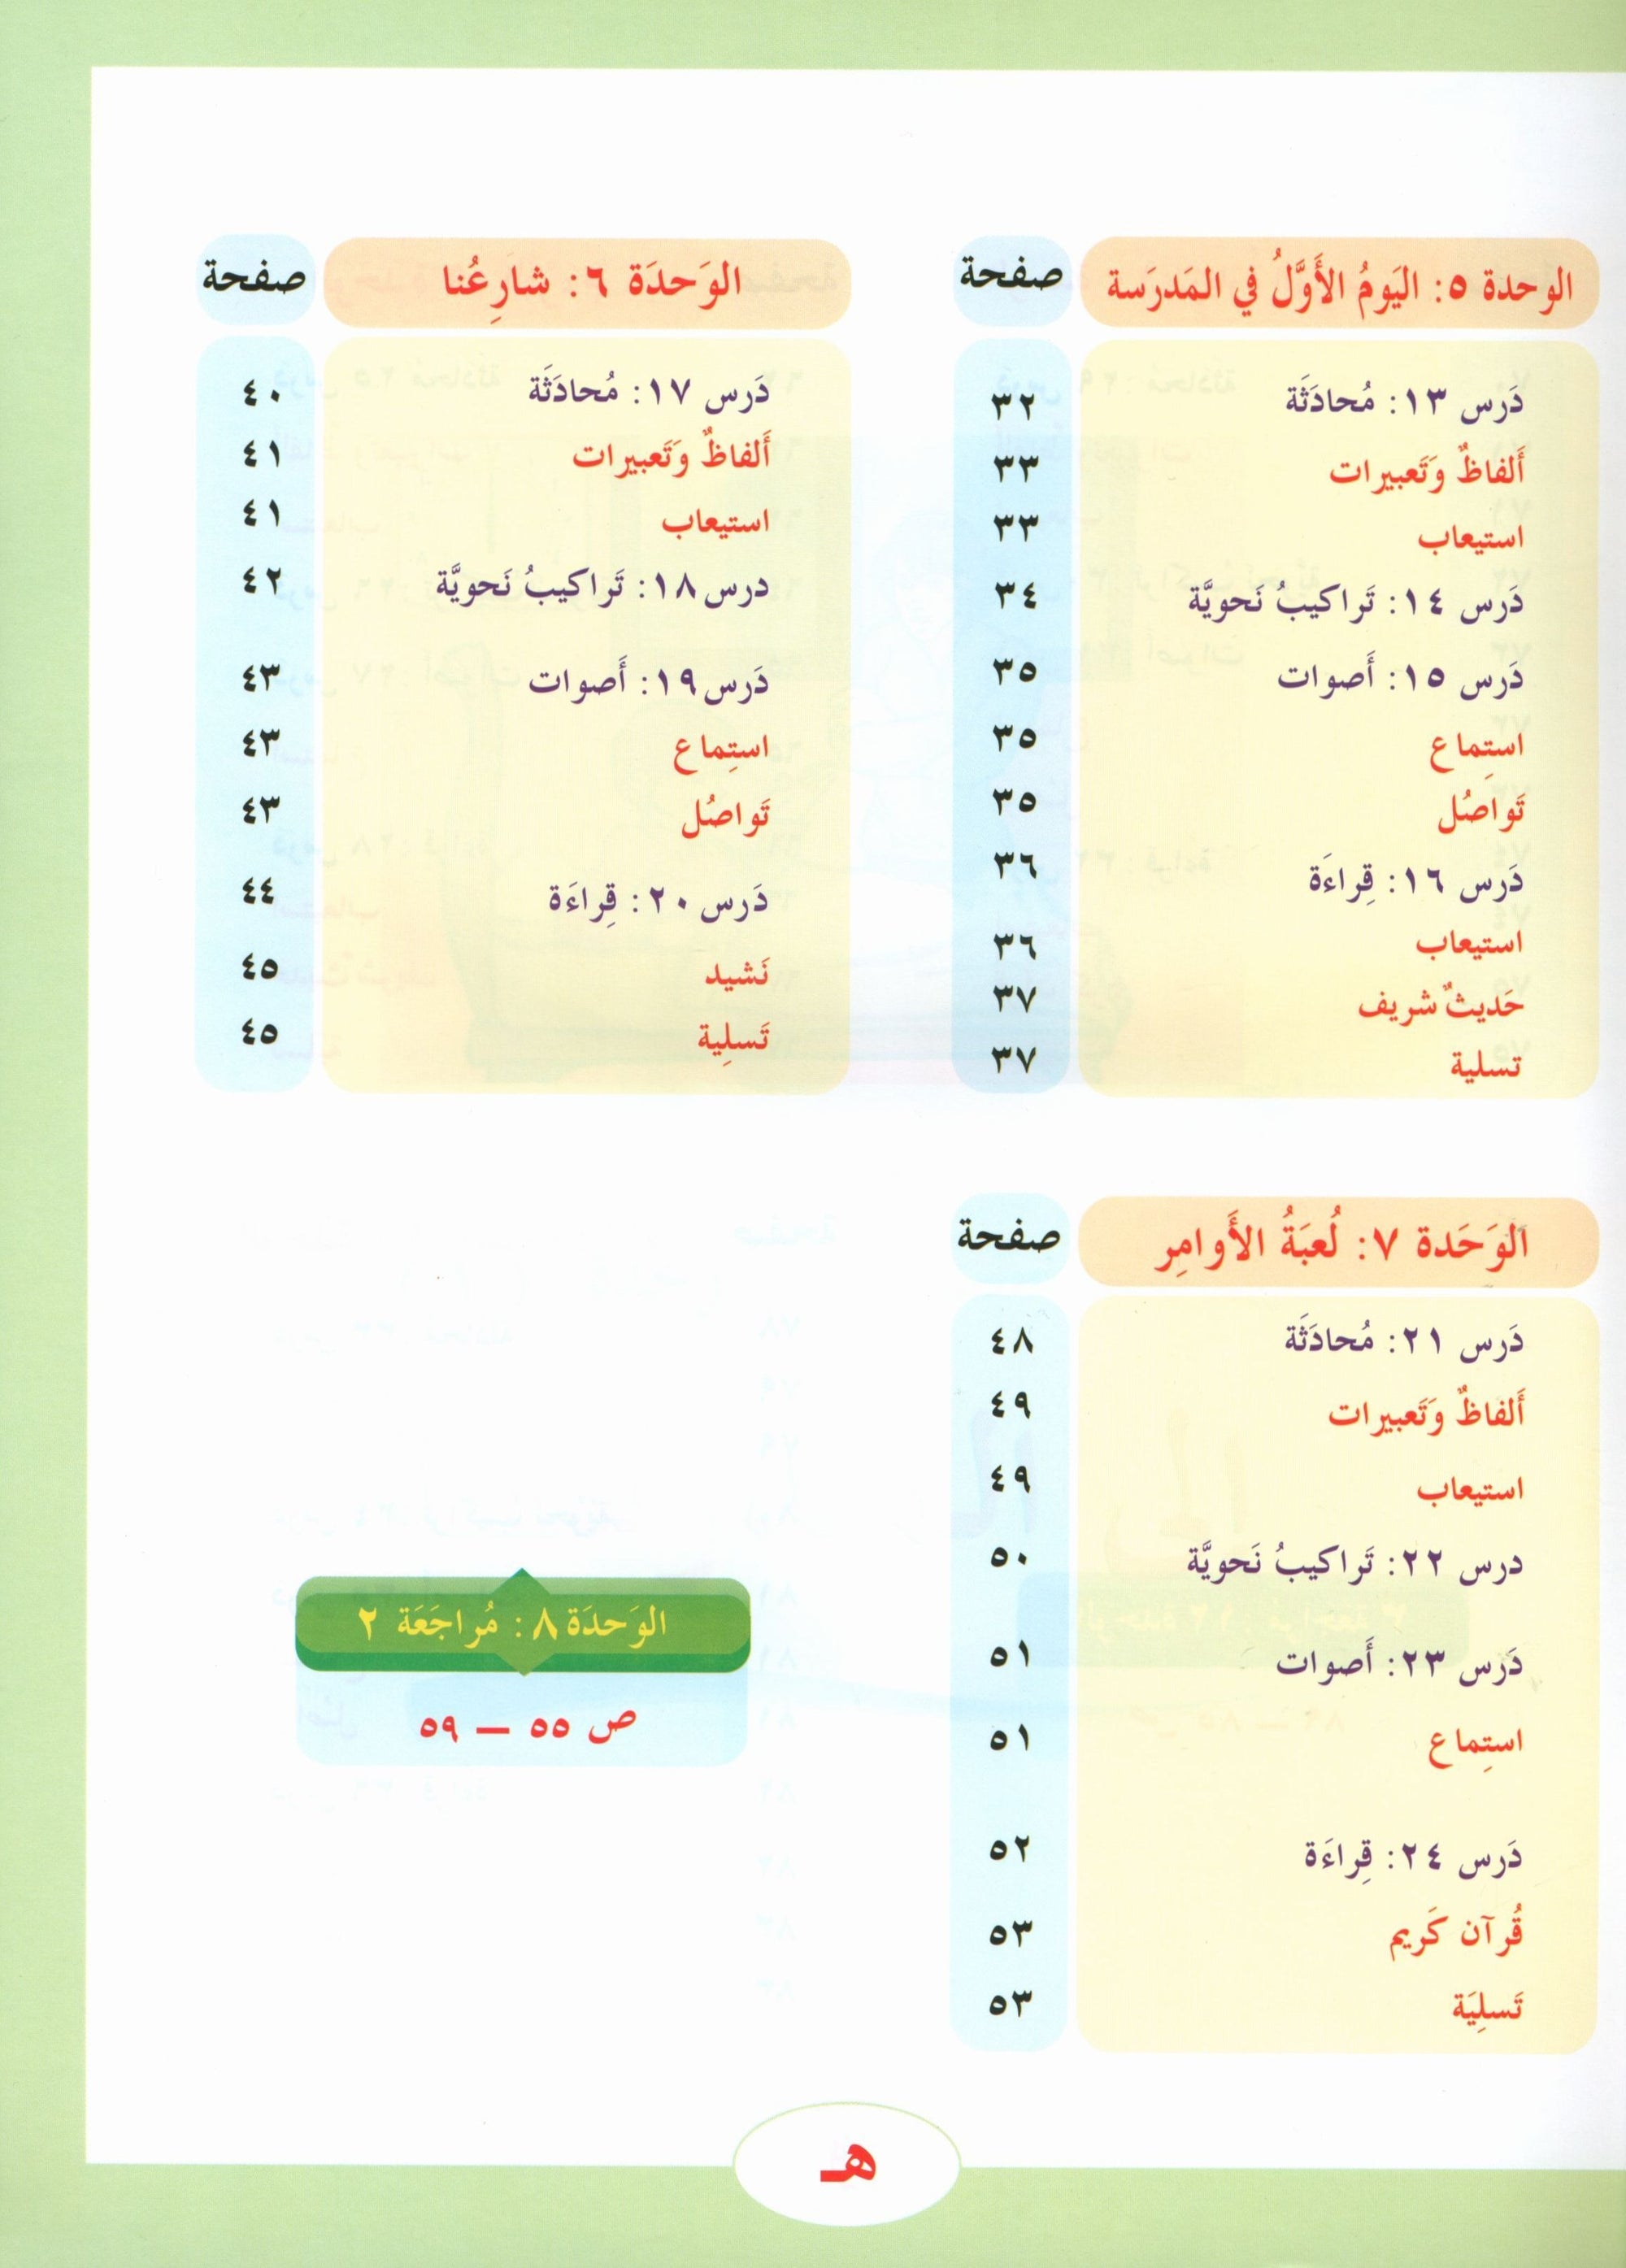 ICO Learn Arabic Textbook Level 3 Part 1 تعلم العربية كتاب التلميذ